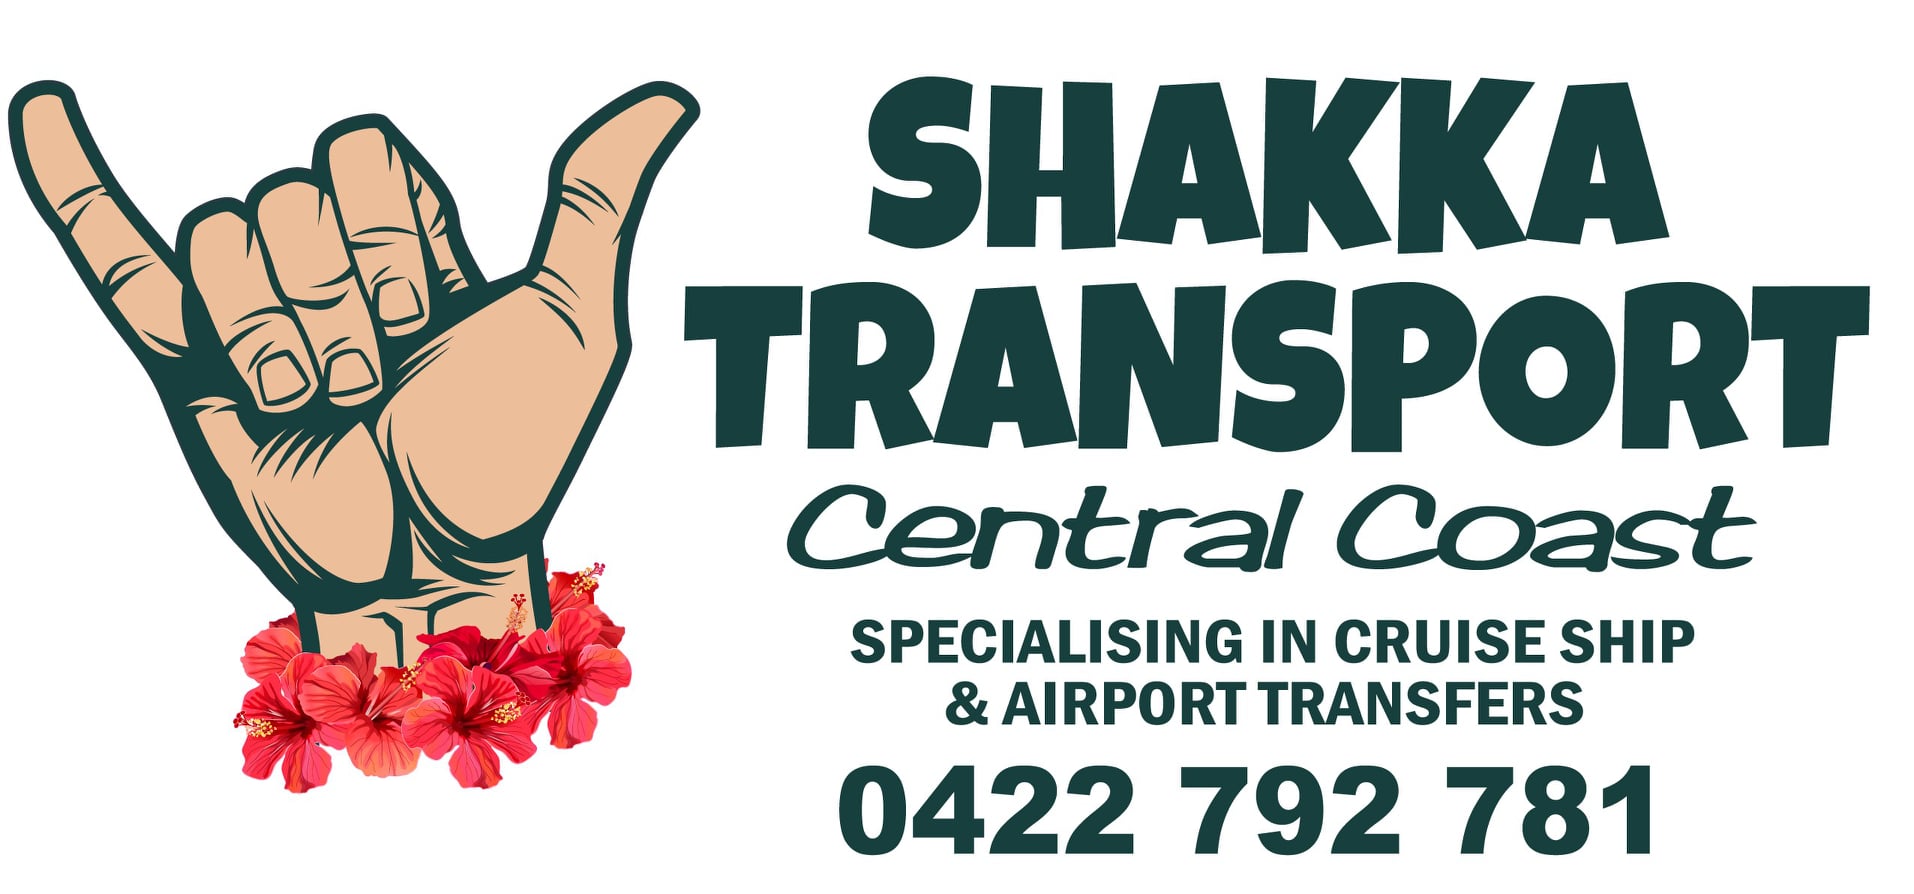 Shakka Transport Gosford Central Coast - NSW | OBZ Online Business Zone